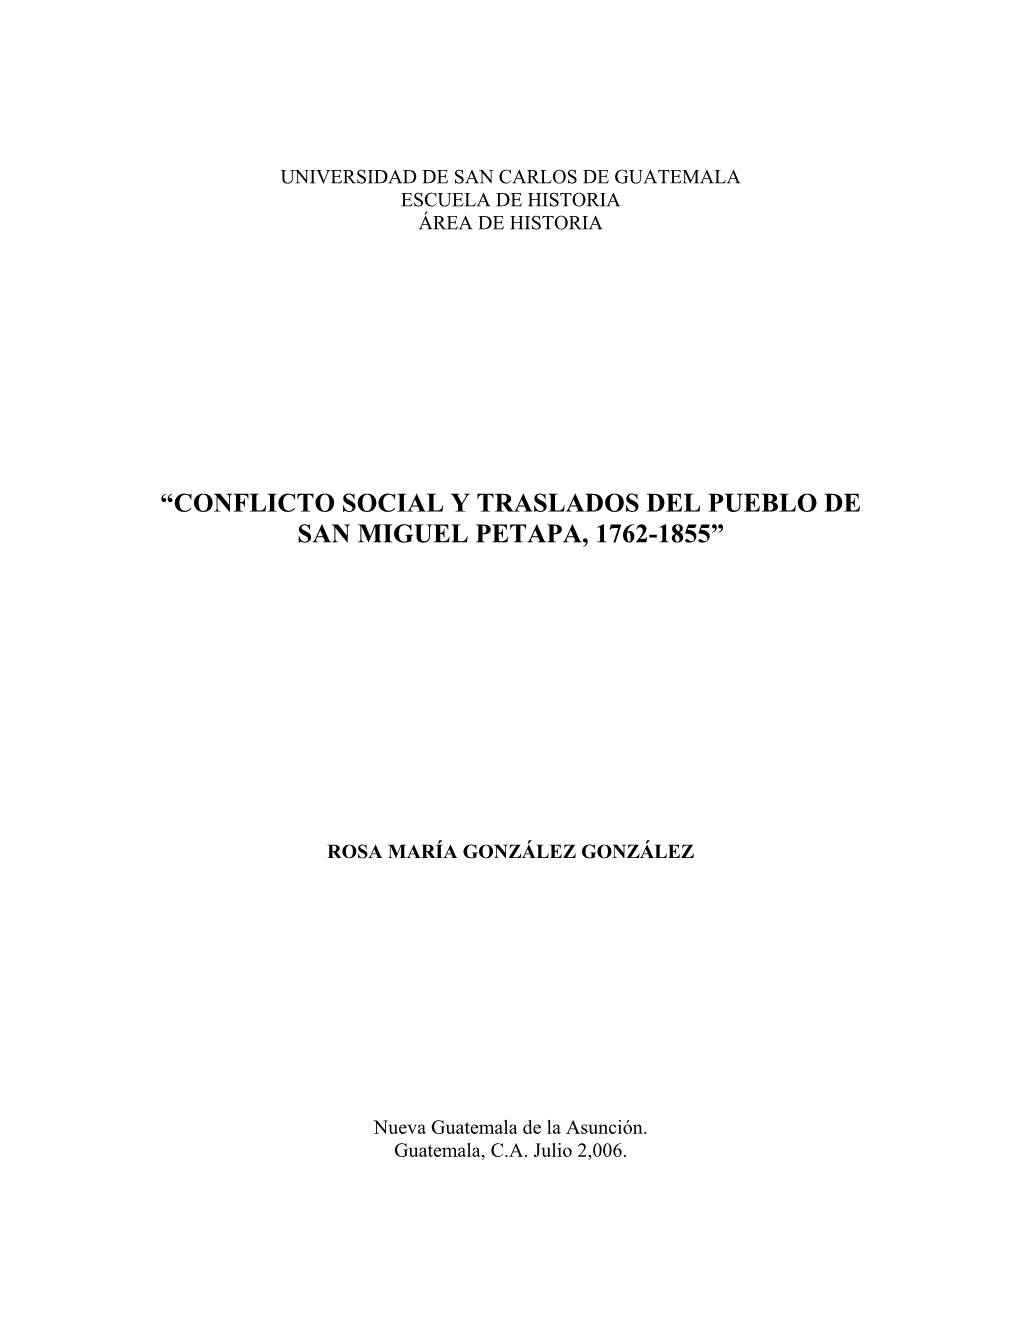 Conflicto Social Y Traslados Del Pueblo De San Miguel Petapa, 1762-1855”